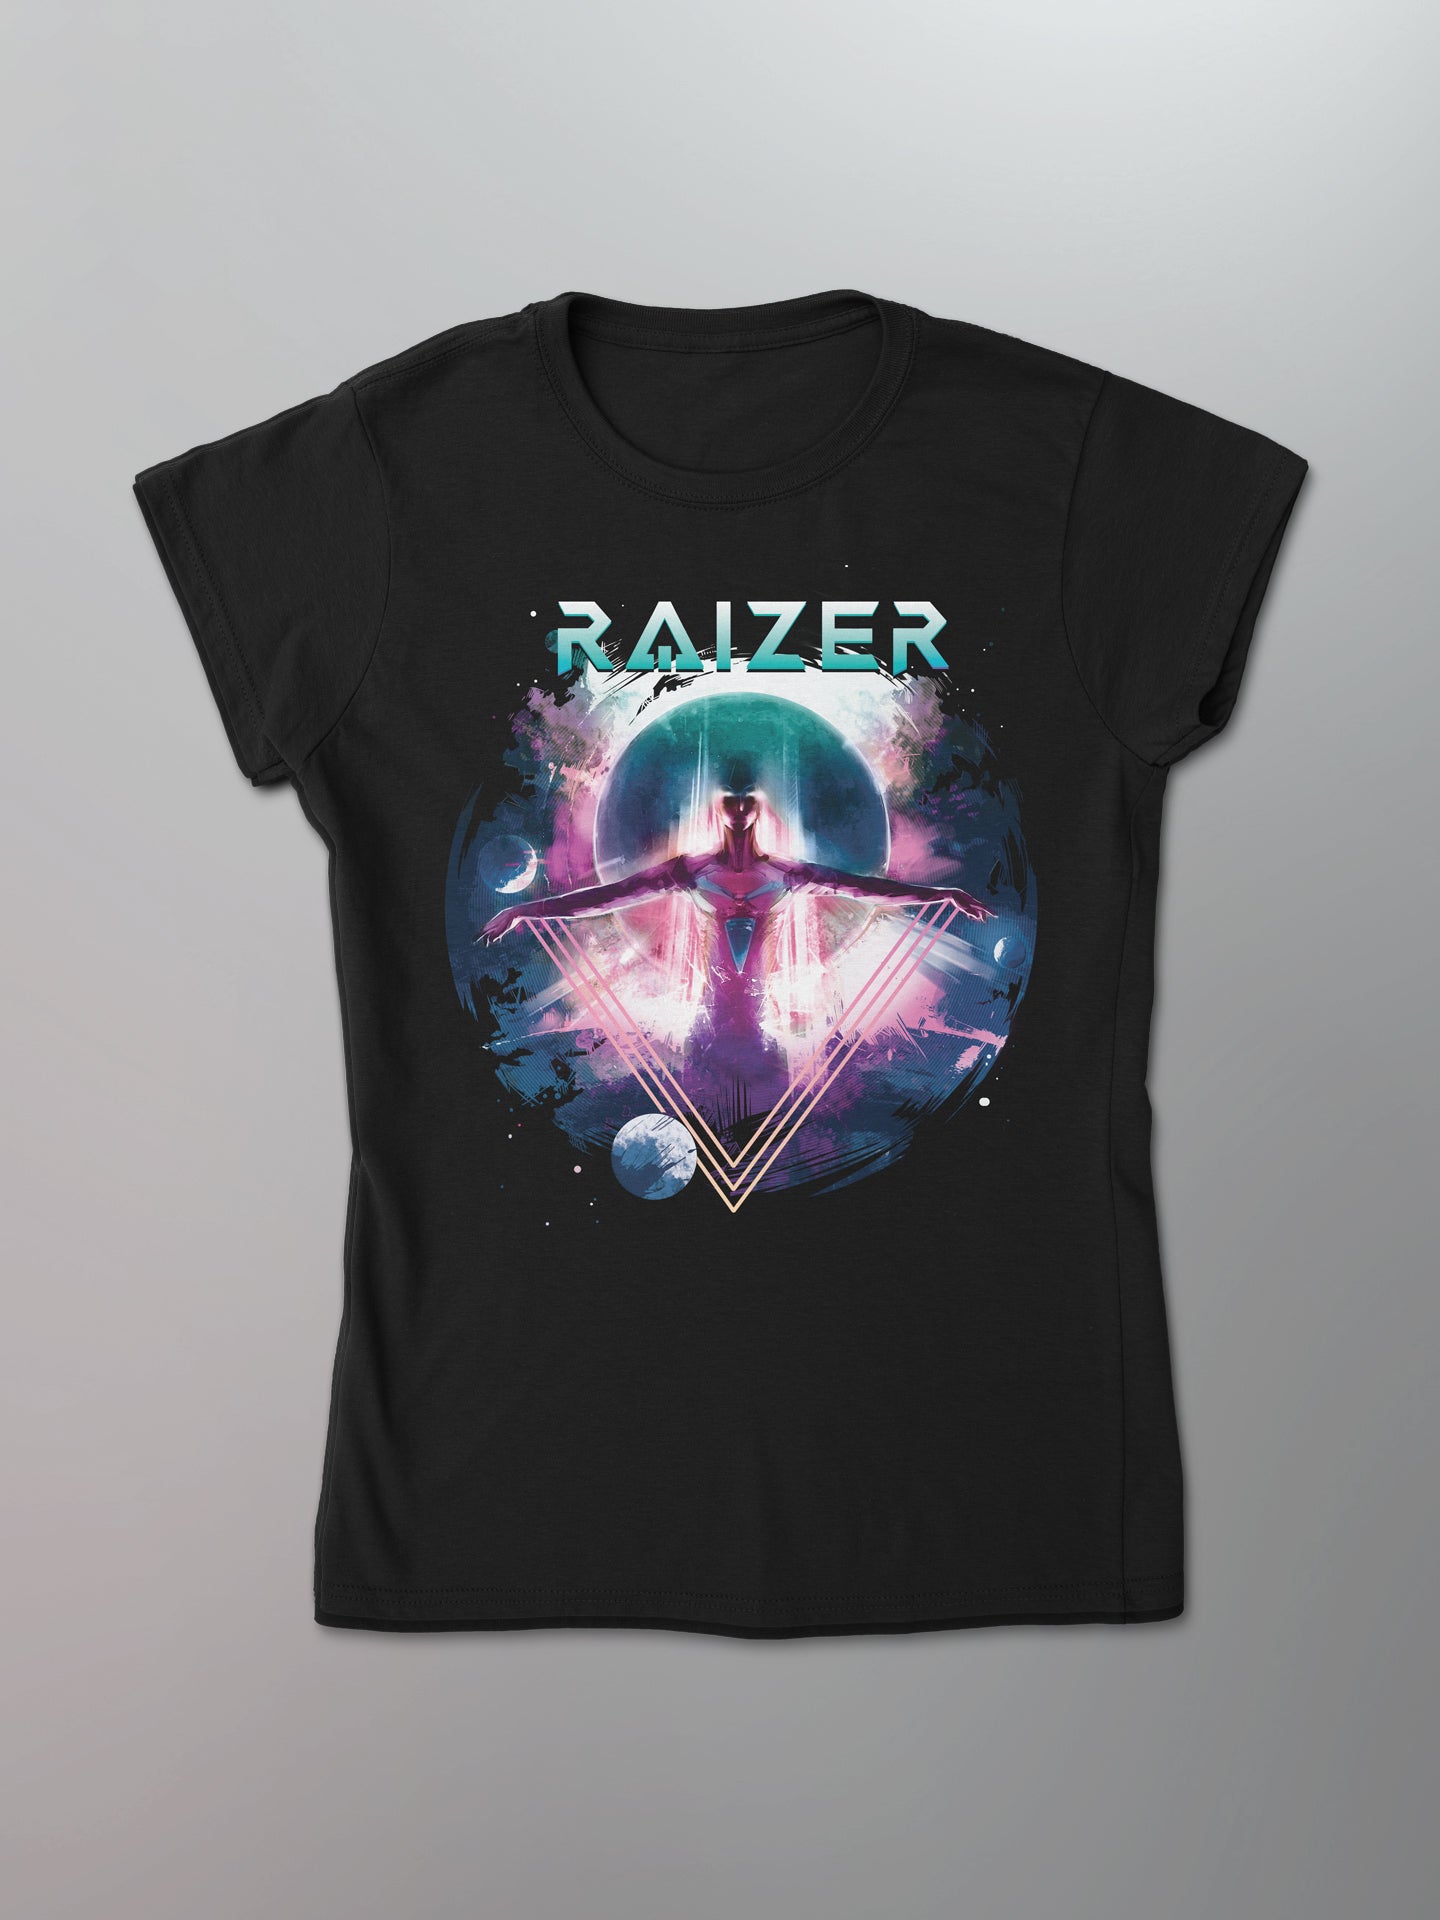 Raizer - We Are The Future Women's Shirt